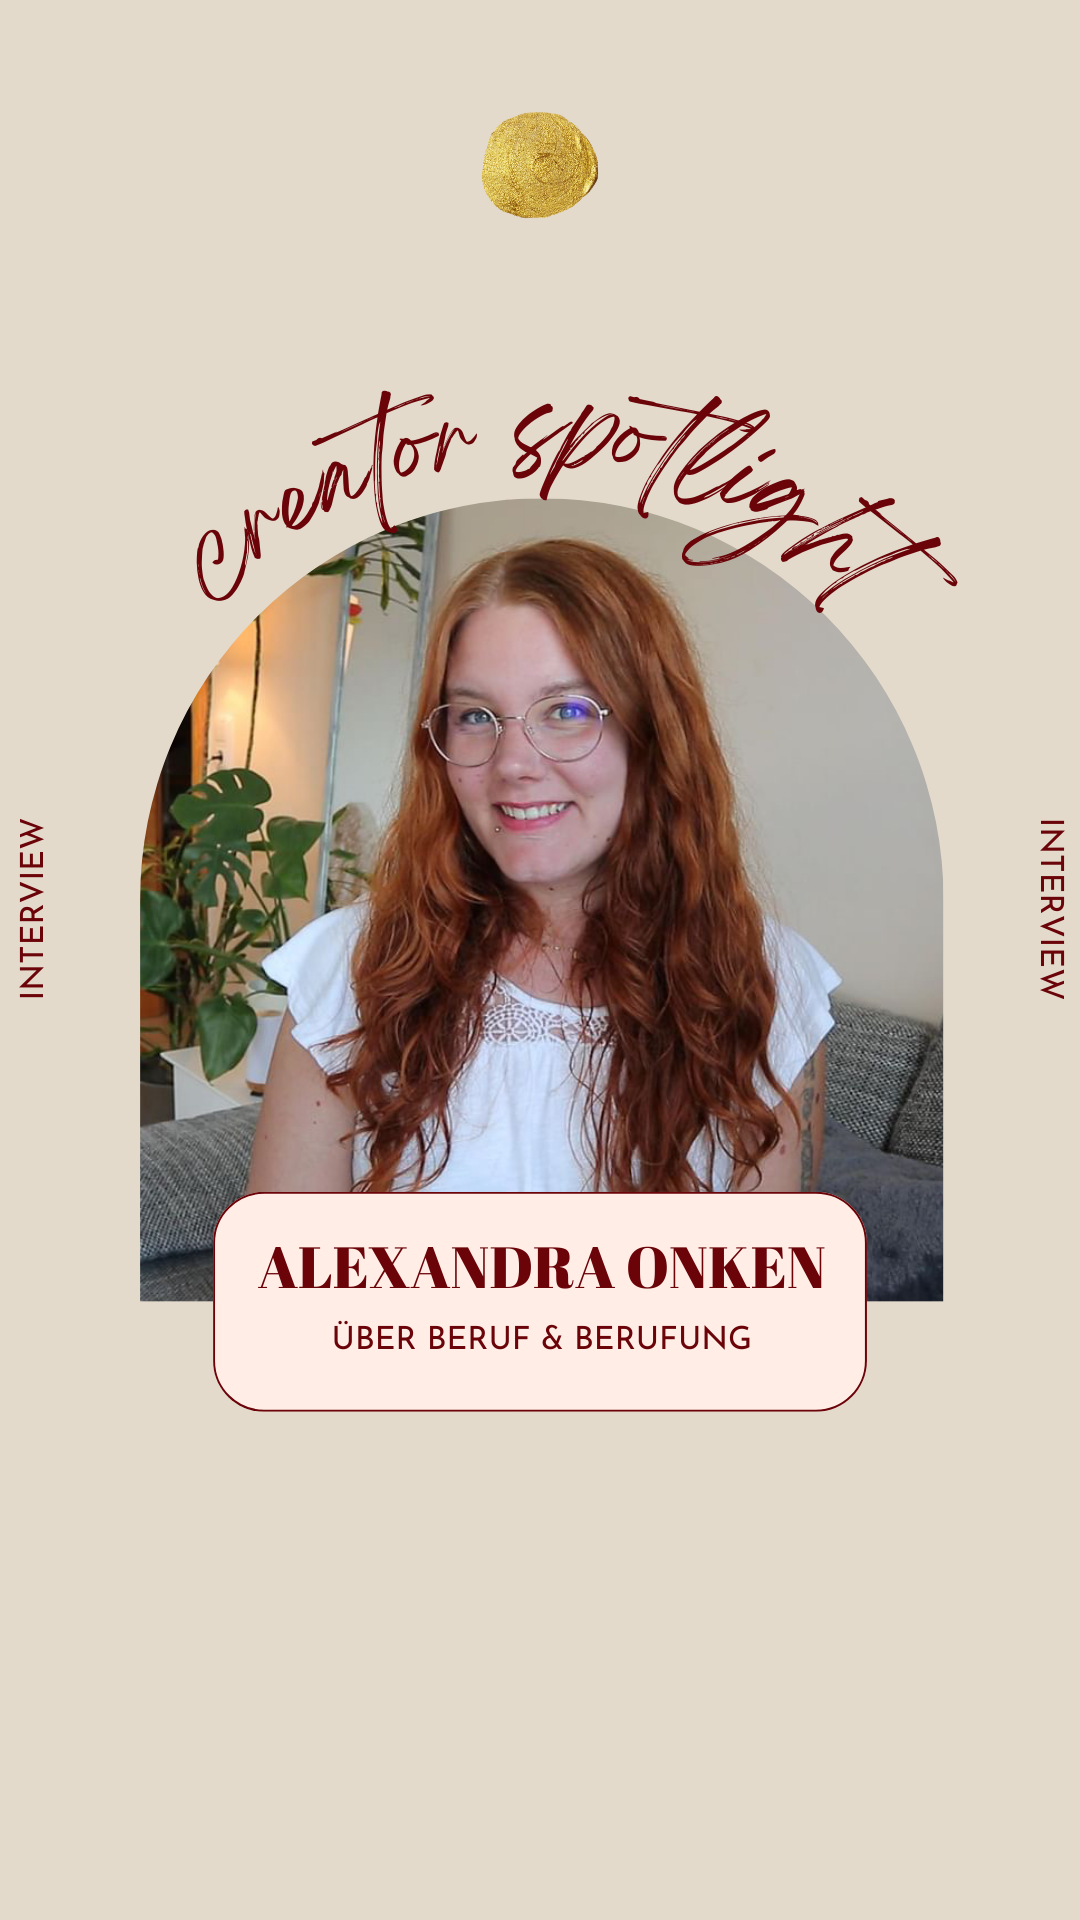 Berufung finden und leben Alexandra Onken Interview Sarine Turhede